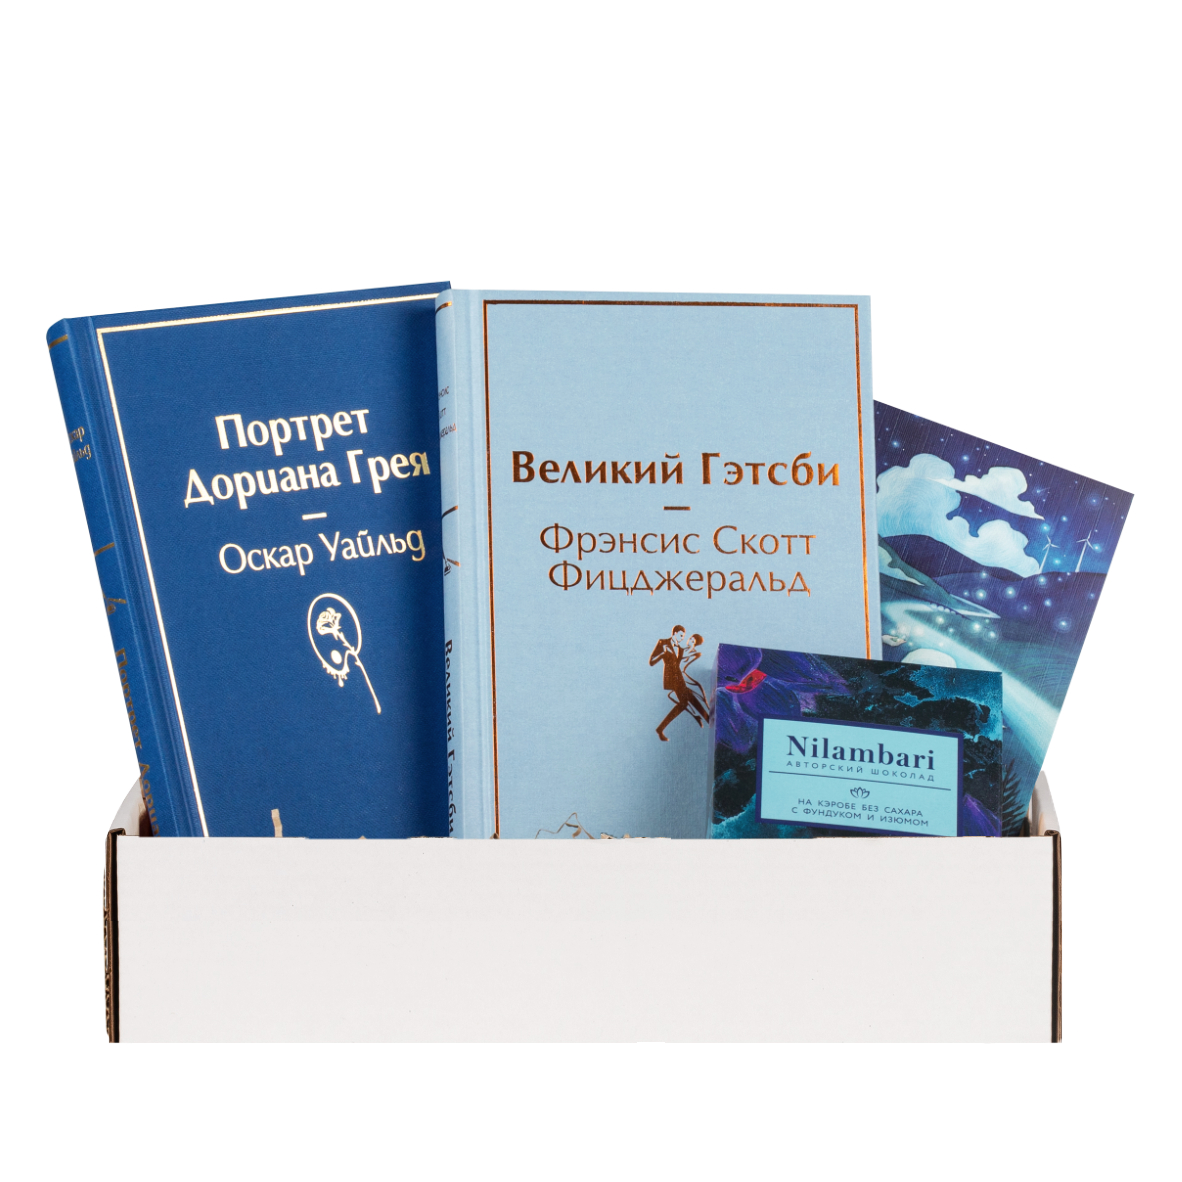 Подарочный набор с книгами «Портрет Дориана Грея», «Великий Гэтсби» и шоколадом